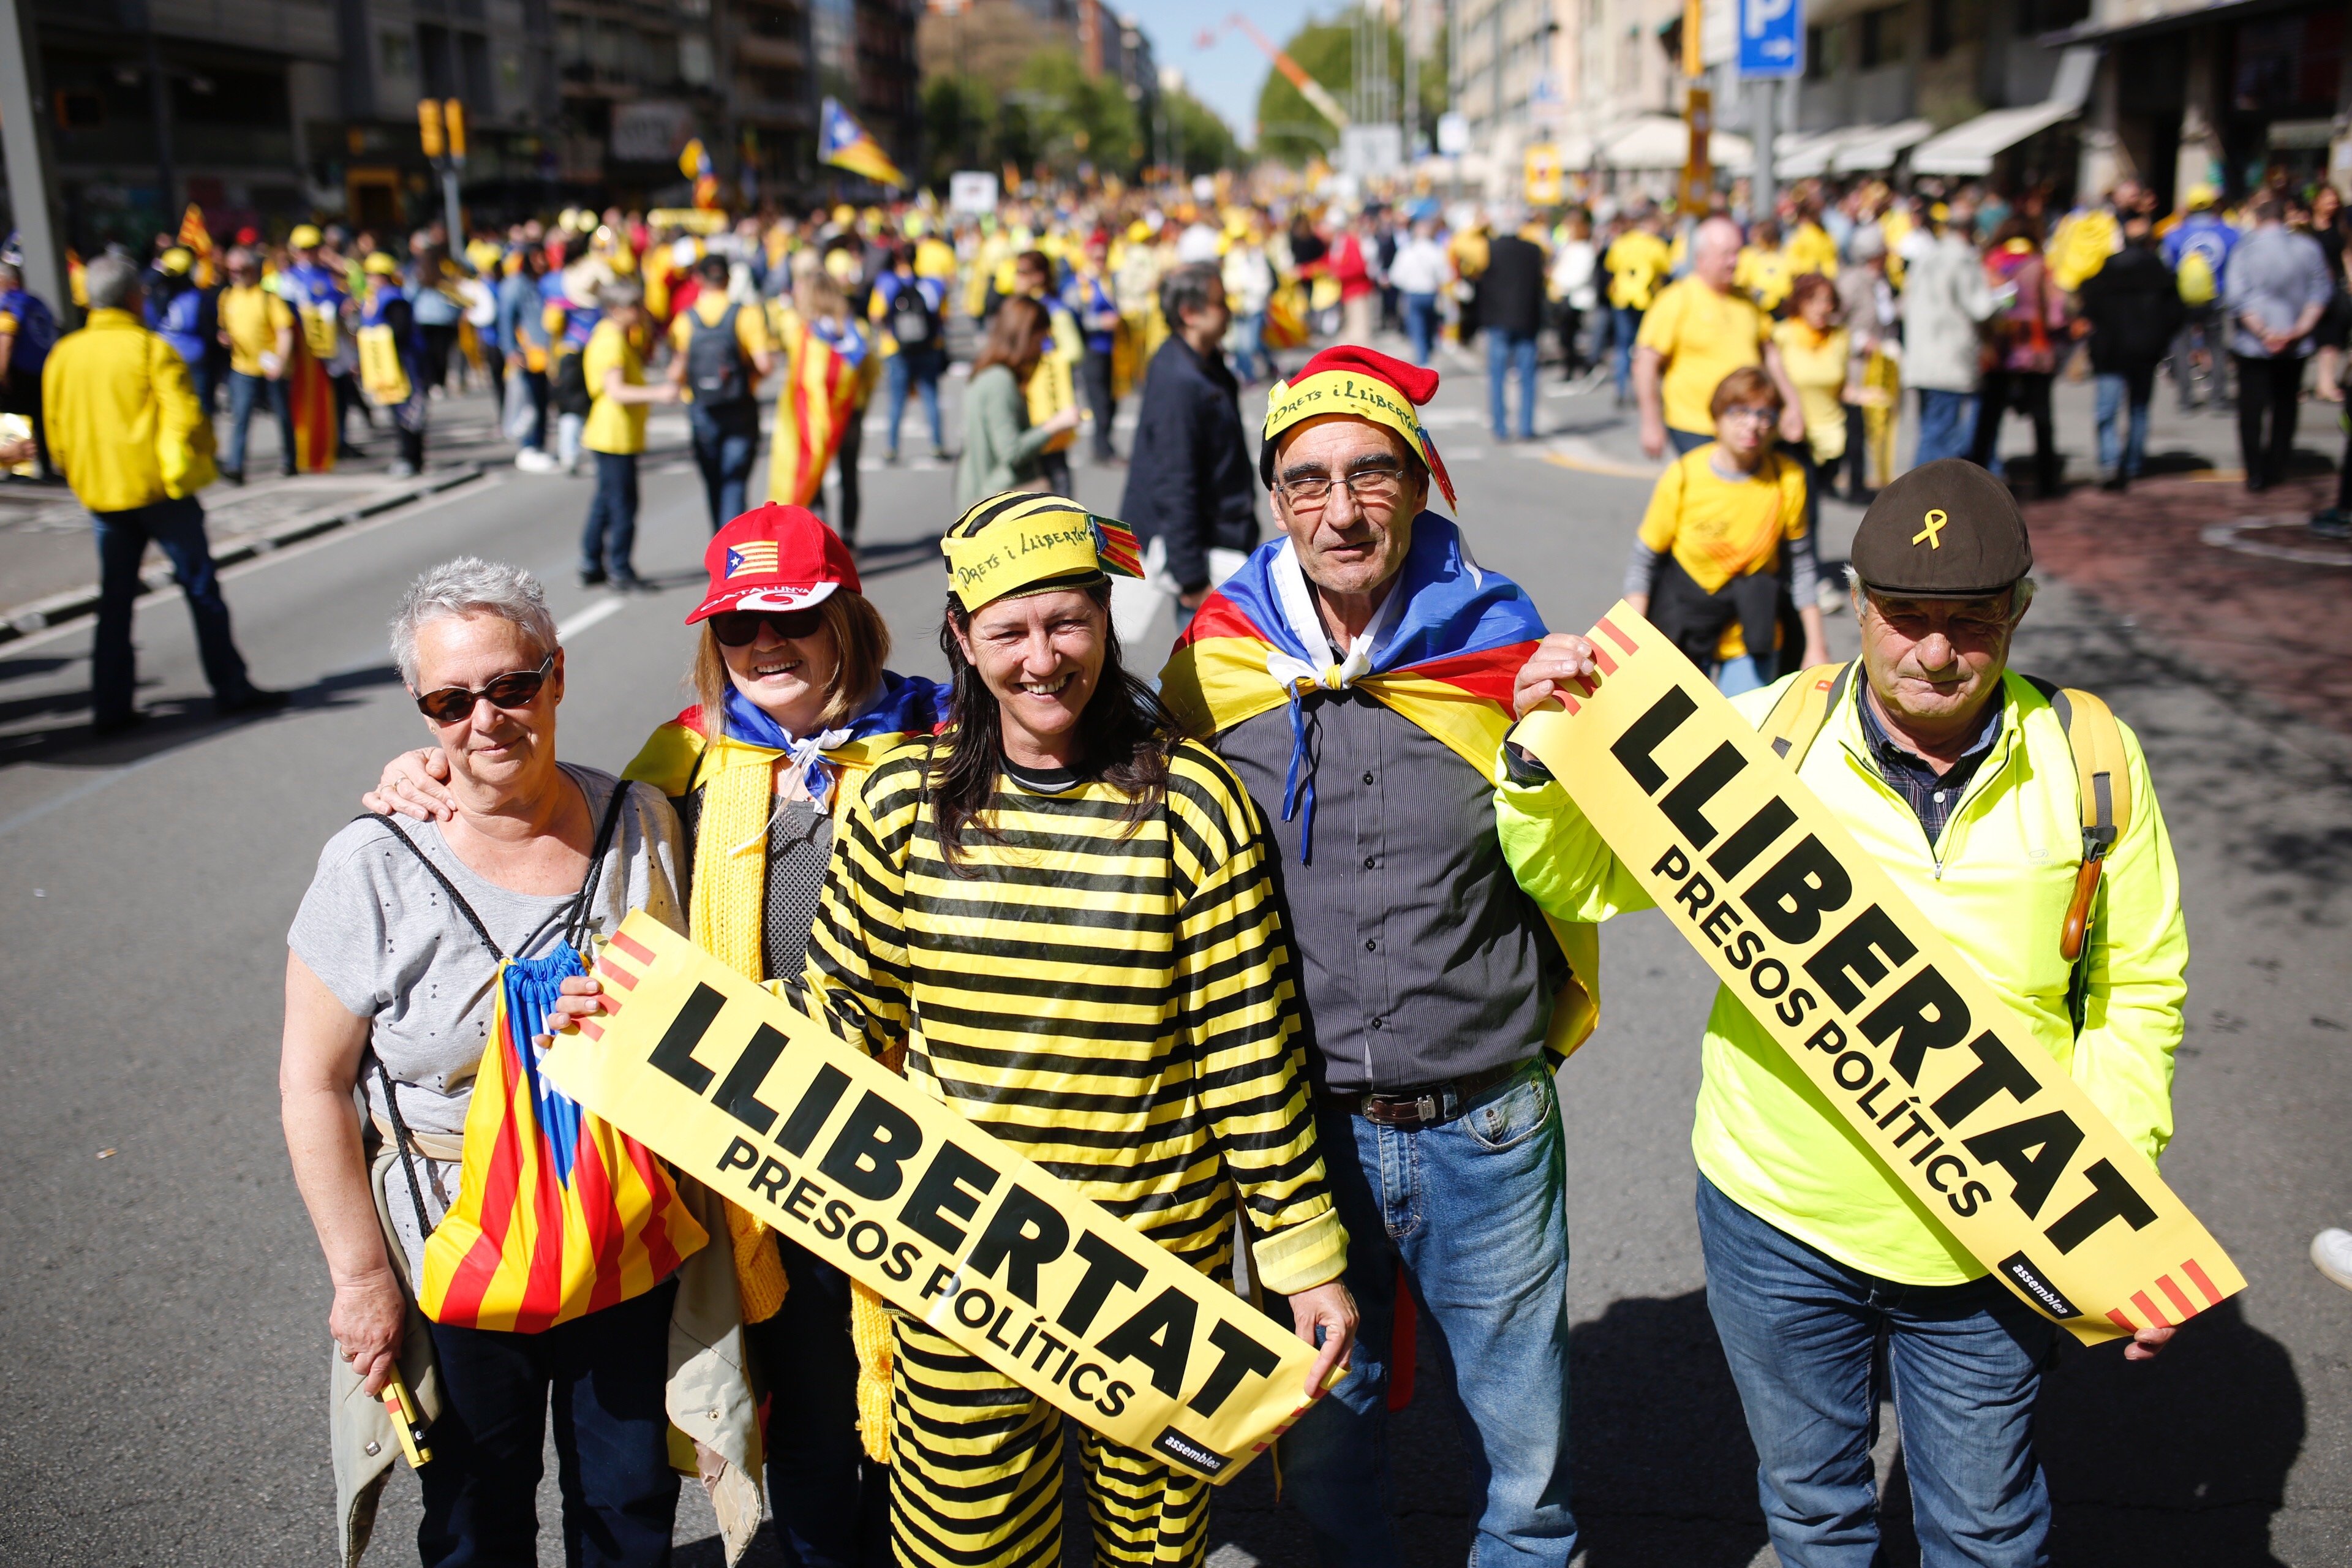 VÍDEO: Crits de "Puigdemont president" i "Llibertat presos polítics" a la manifestació